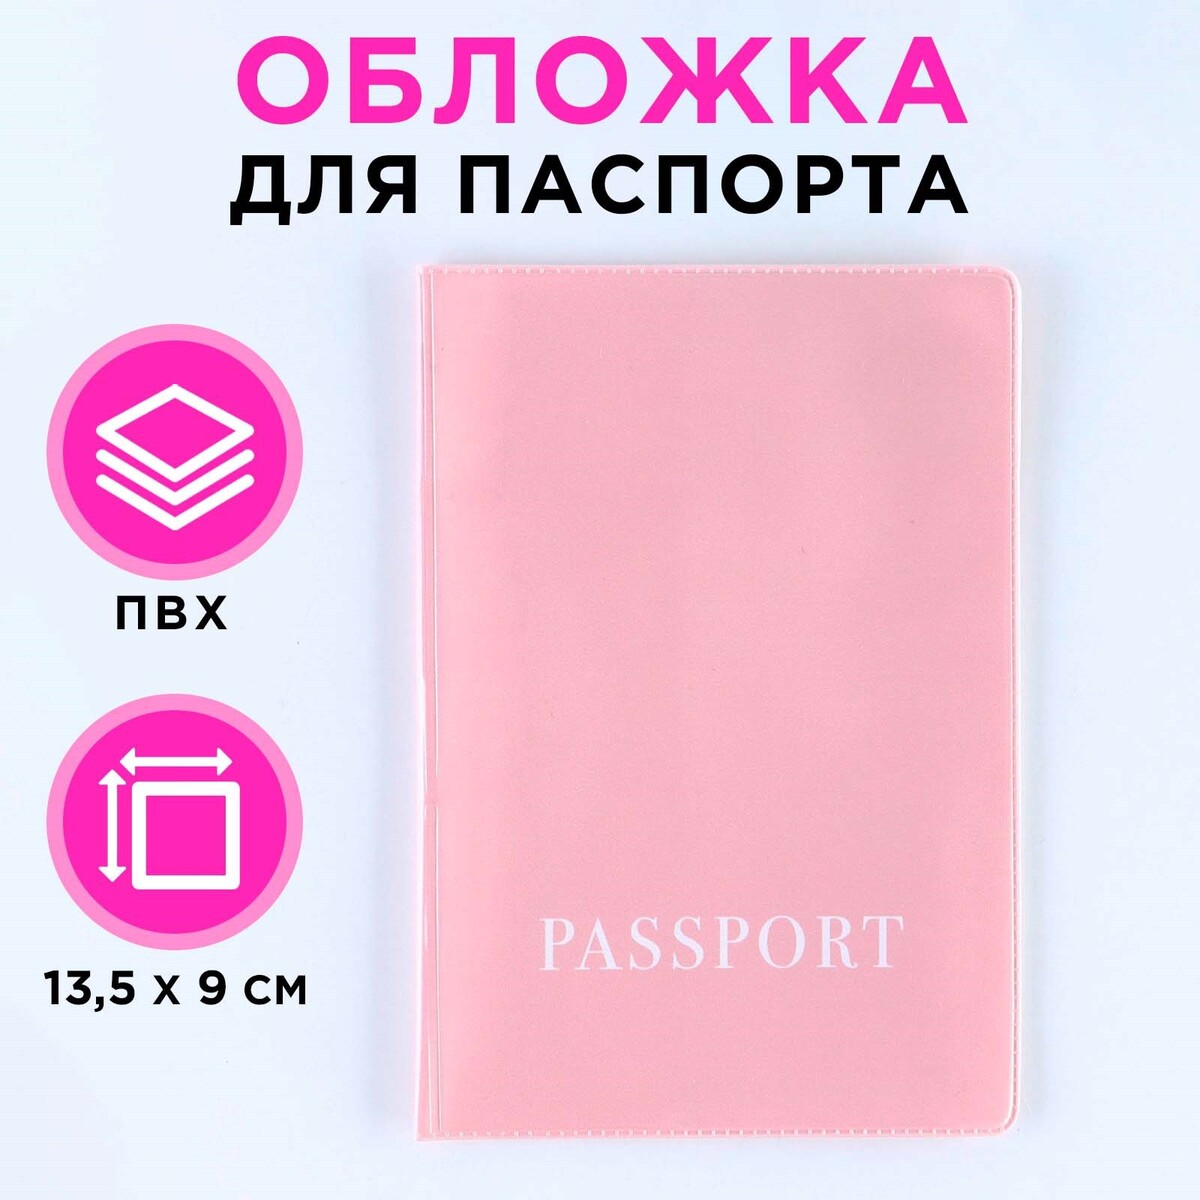 Обложка для паспорта, пвх, оттенок пыльная роза переноска конус под ы пыльная роза 11 5 х 17 х 12 см